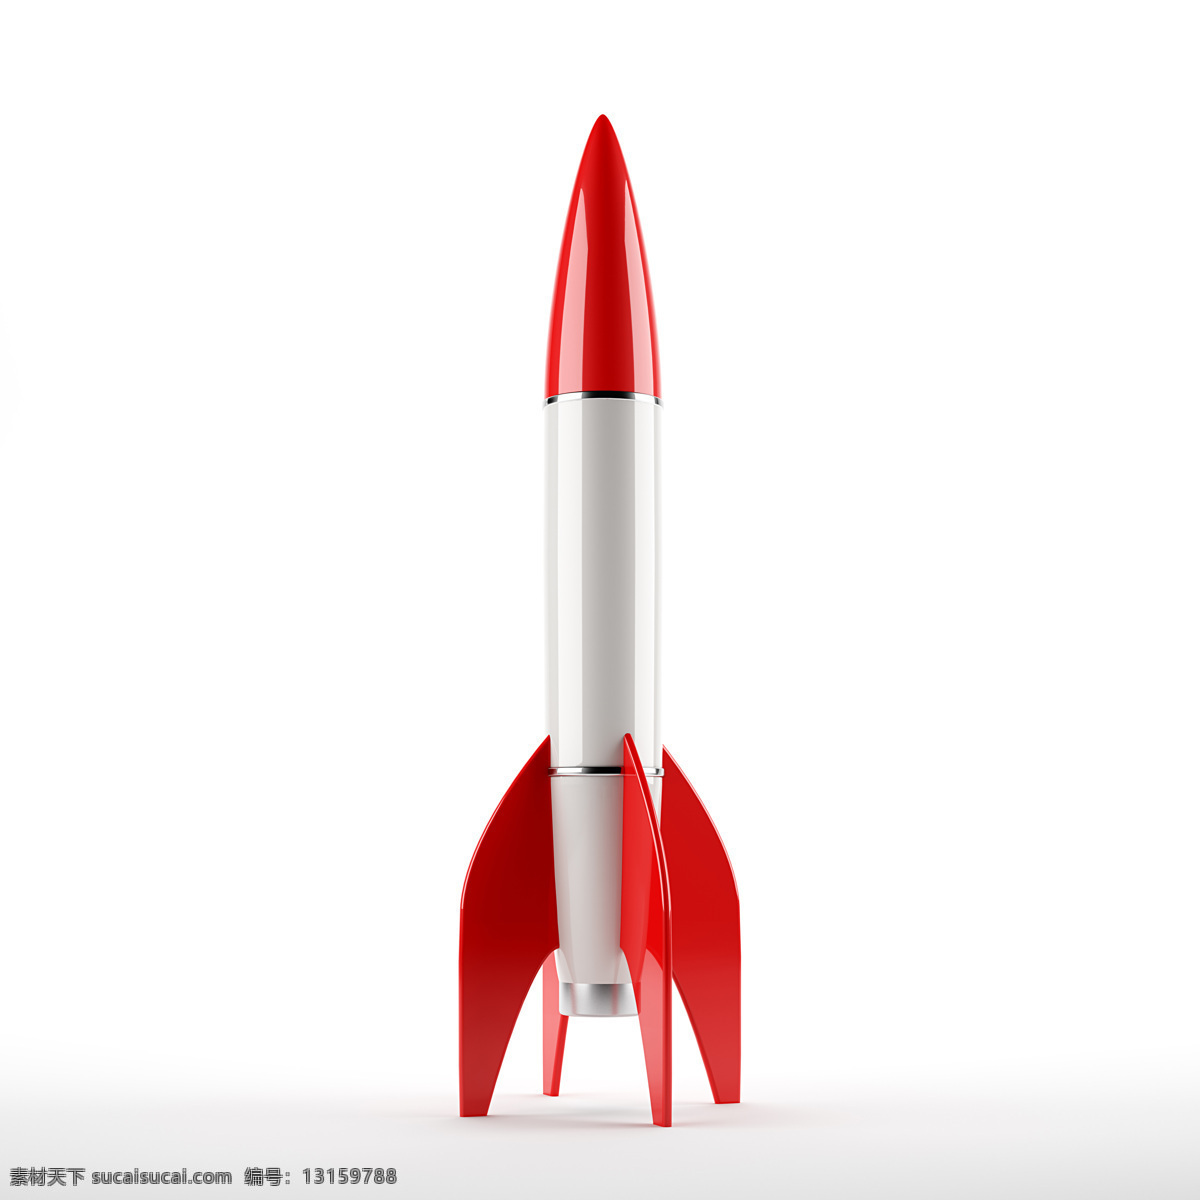 火箭 模型 火箭模型 飞船 太空飞船 宇宙飞船 宇宙太空 环境家居